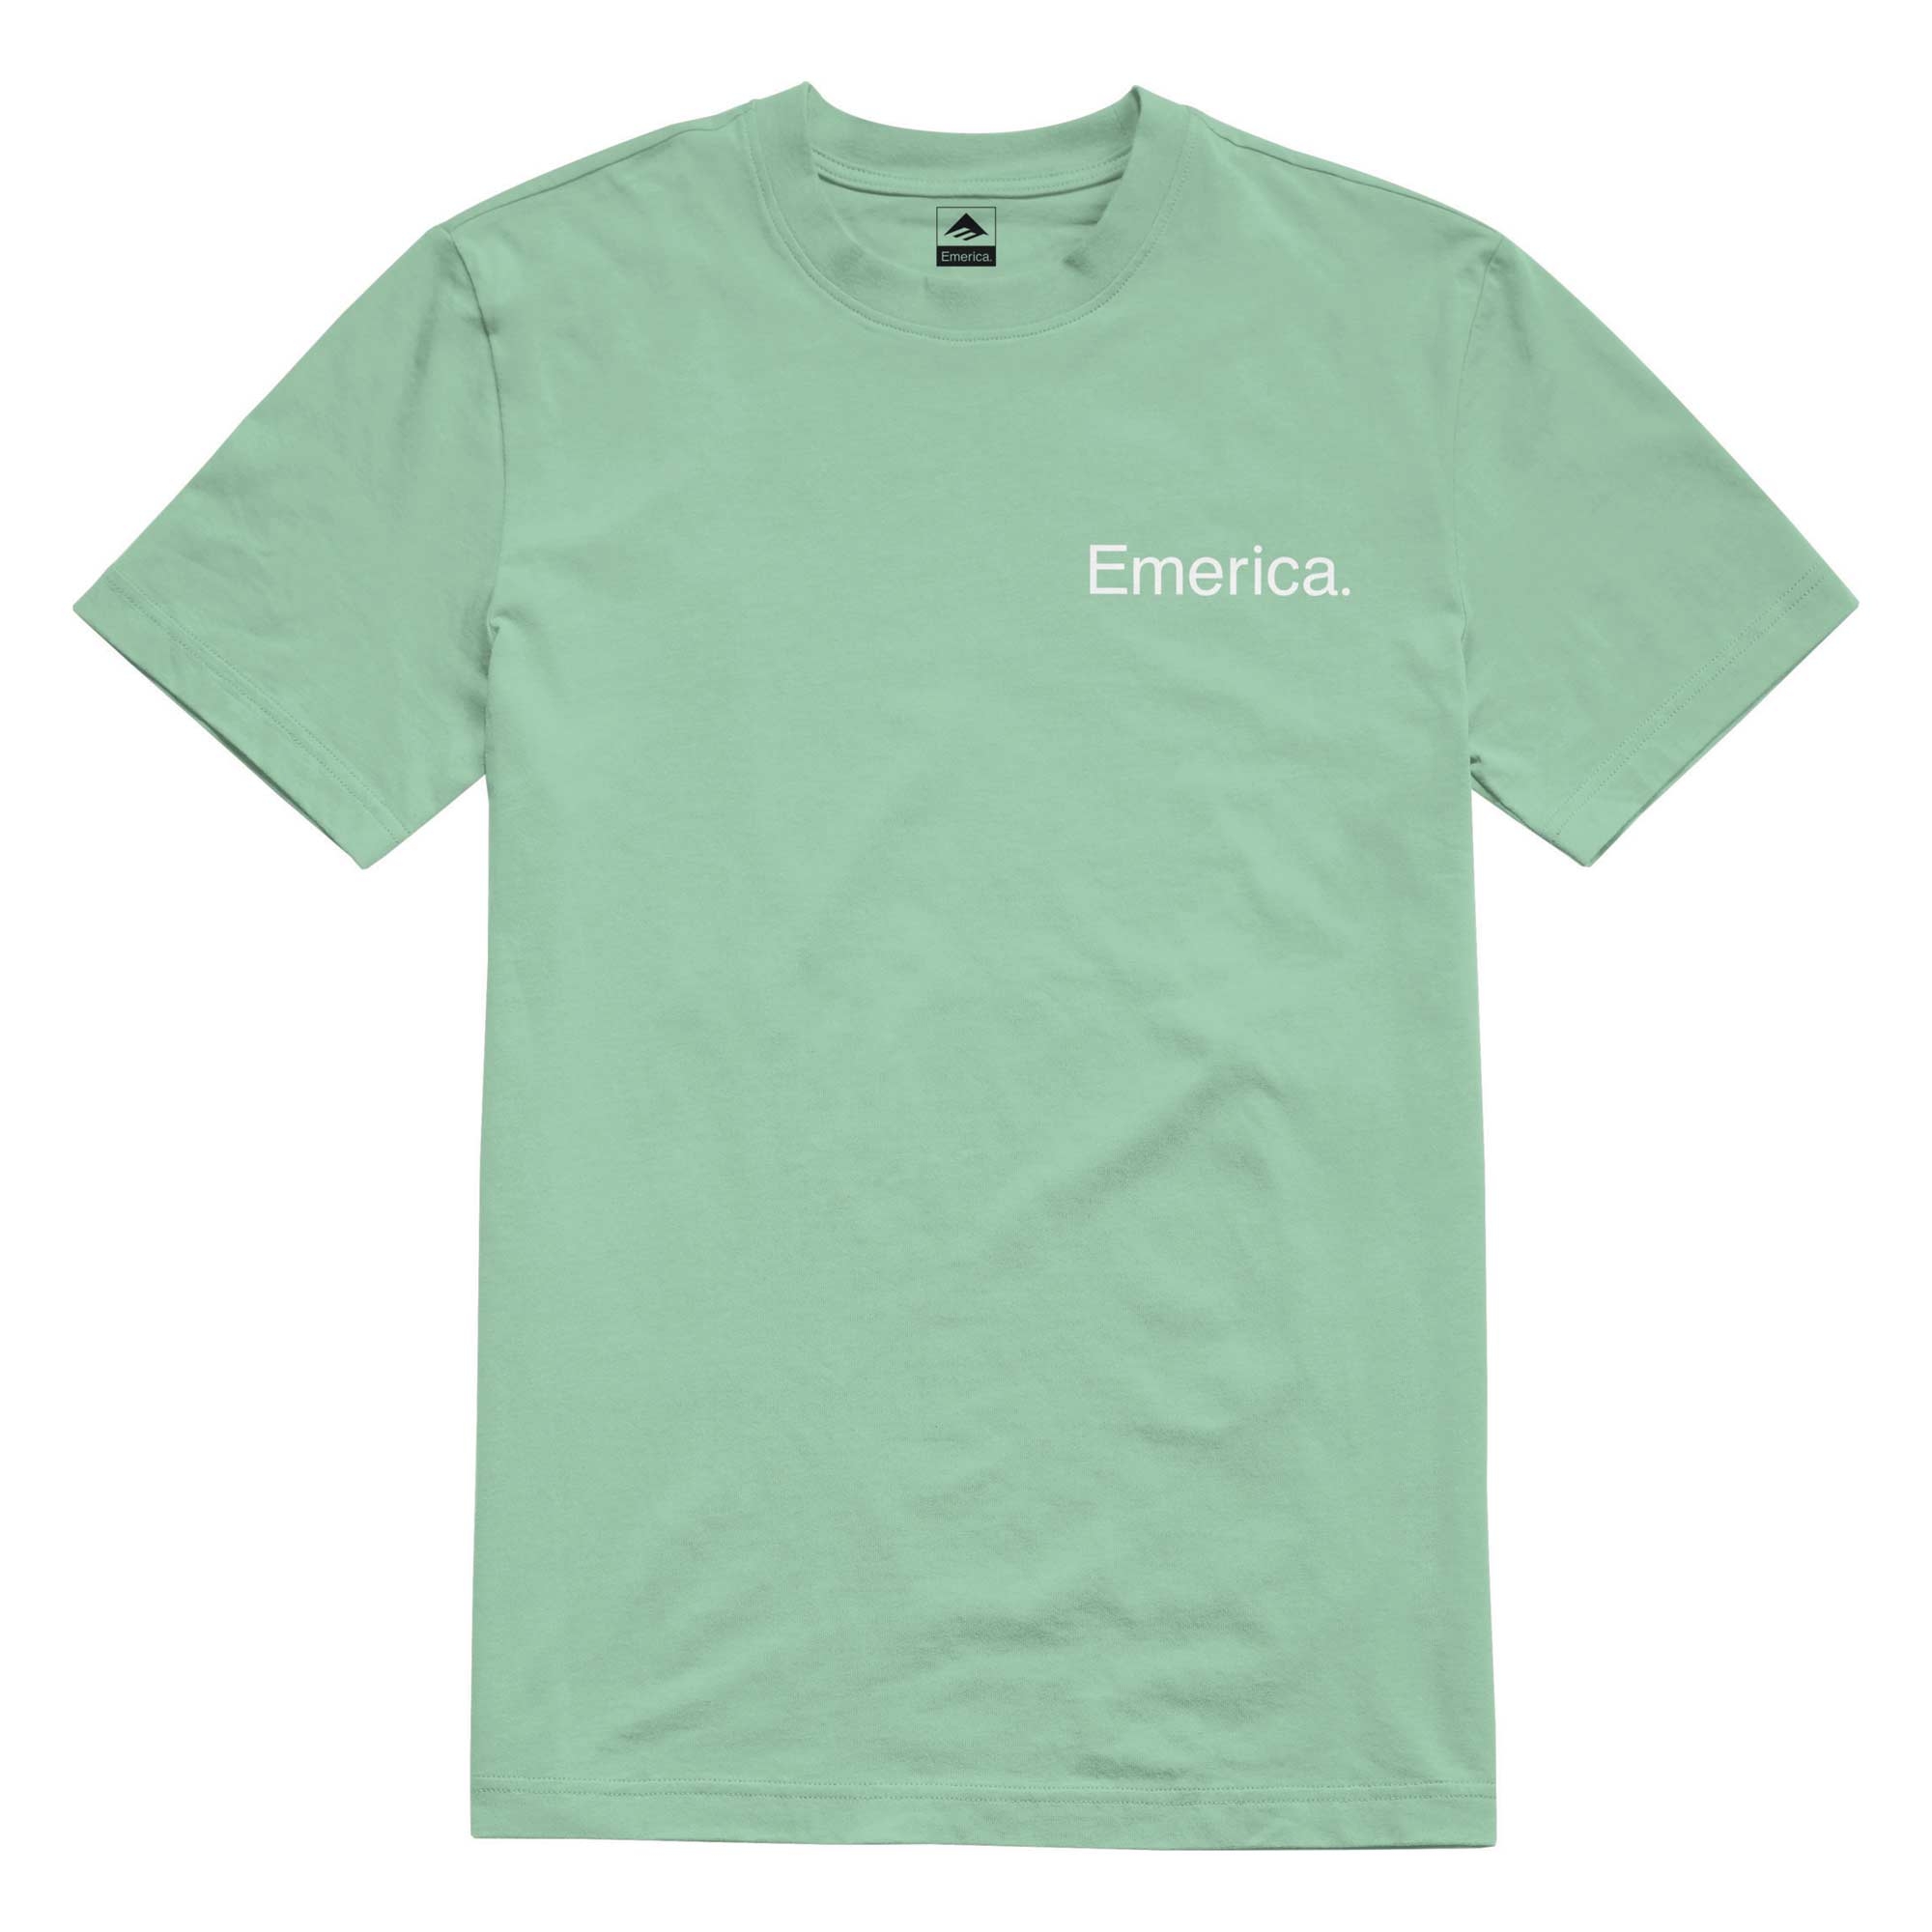 EMERICA T-Shirt PURE S/S mint